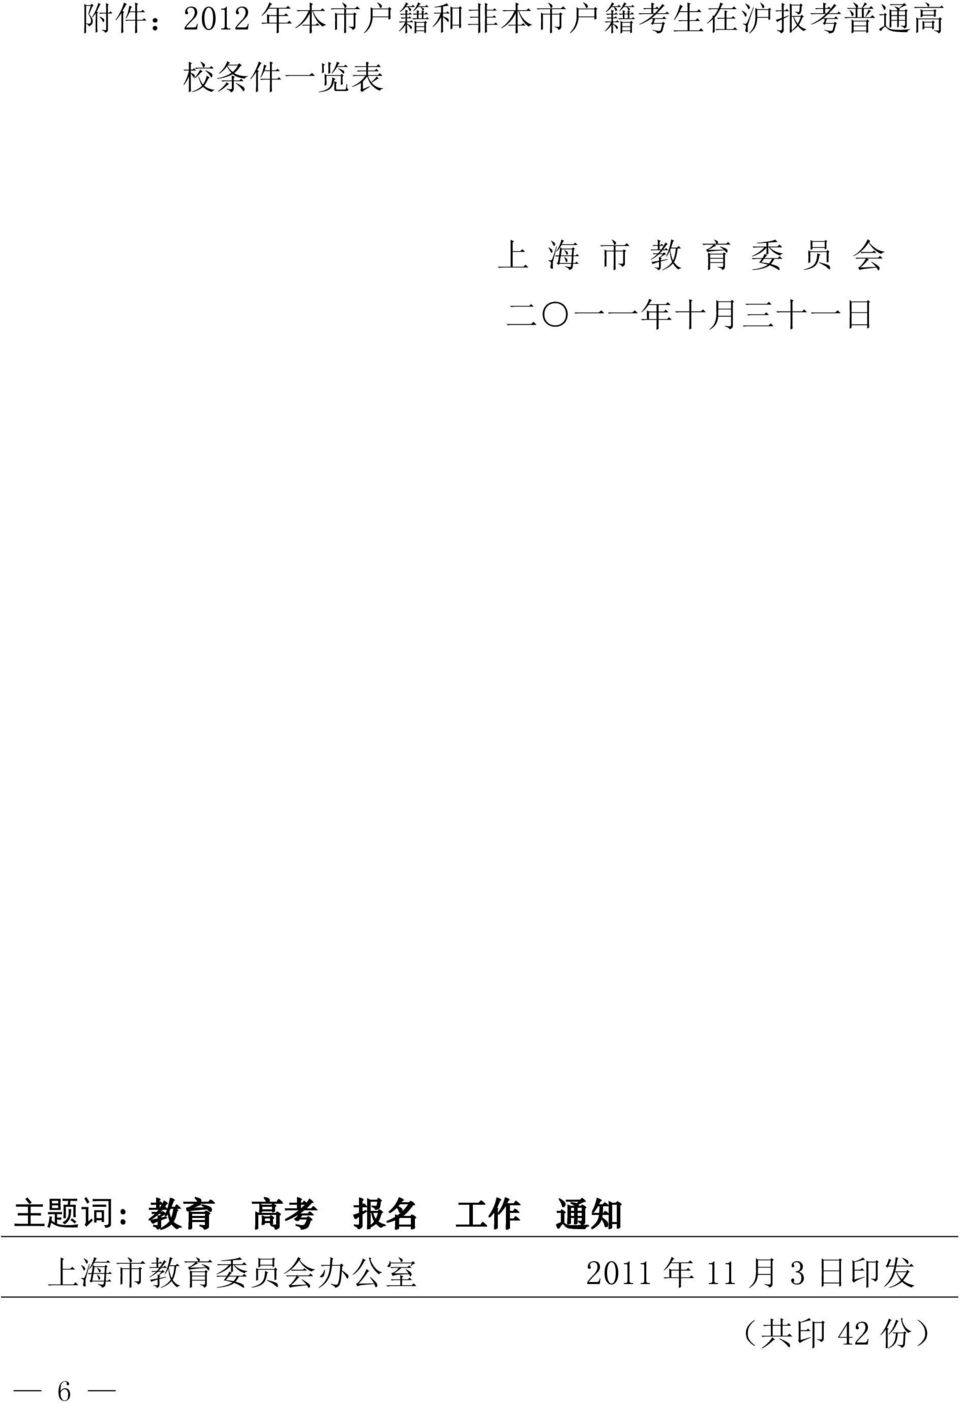 十 一 日 主 题 词 : 教 育 高 考 报 名 上 海 市 教 育 委 员 会 办 公